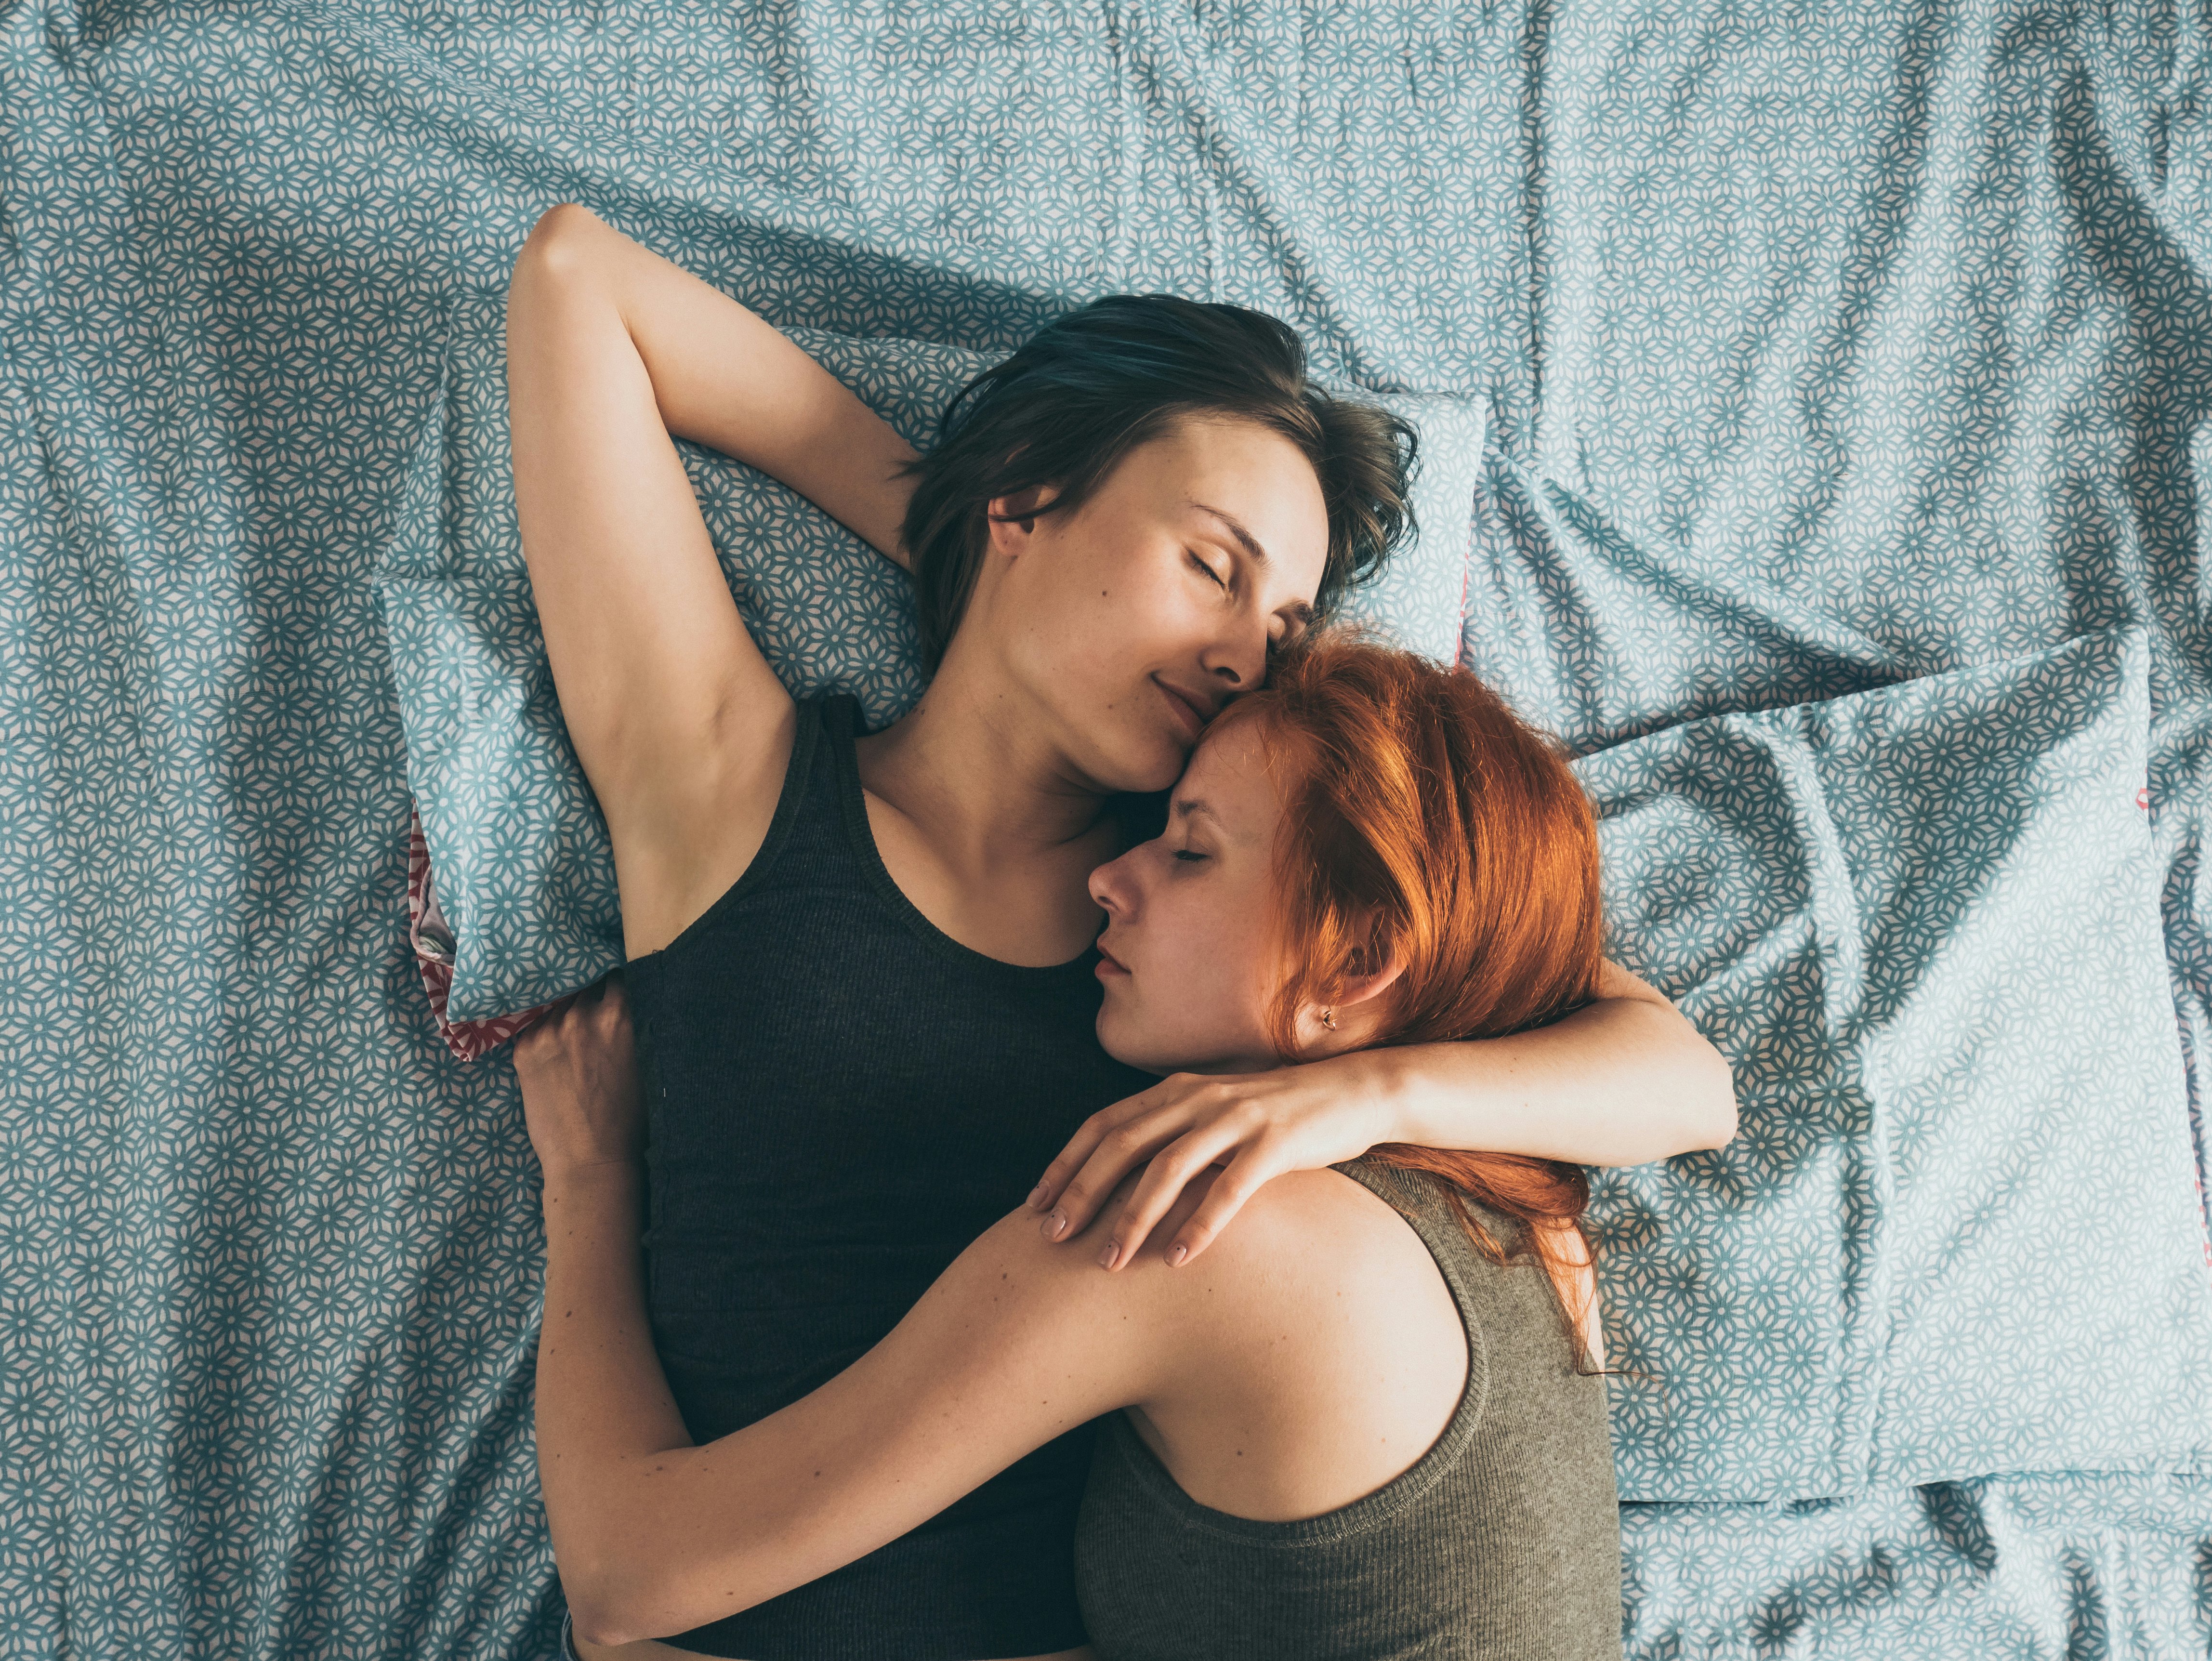 Лесбиянки на кровати подарили друг другу незабываемый куни и мастурбацию